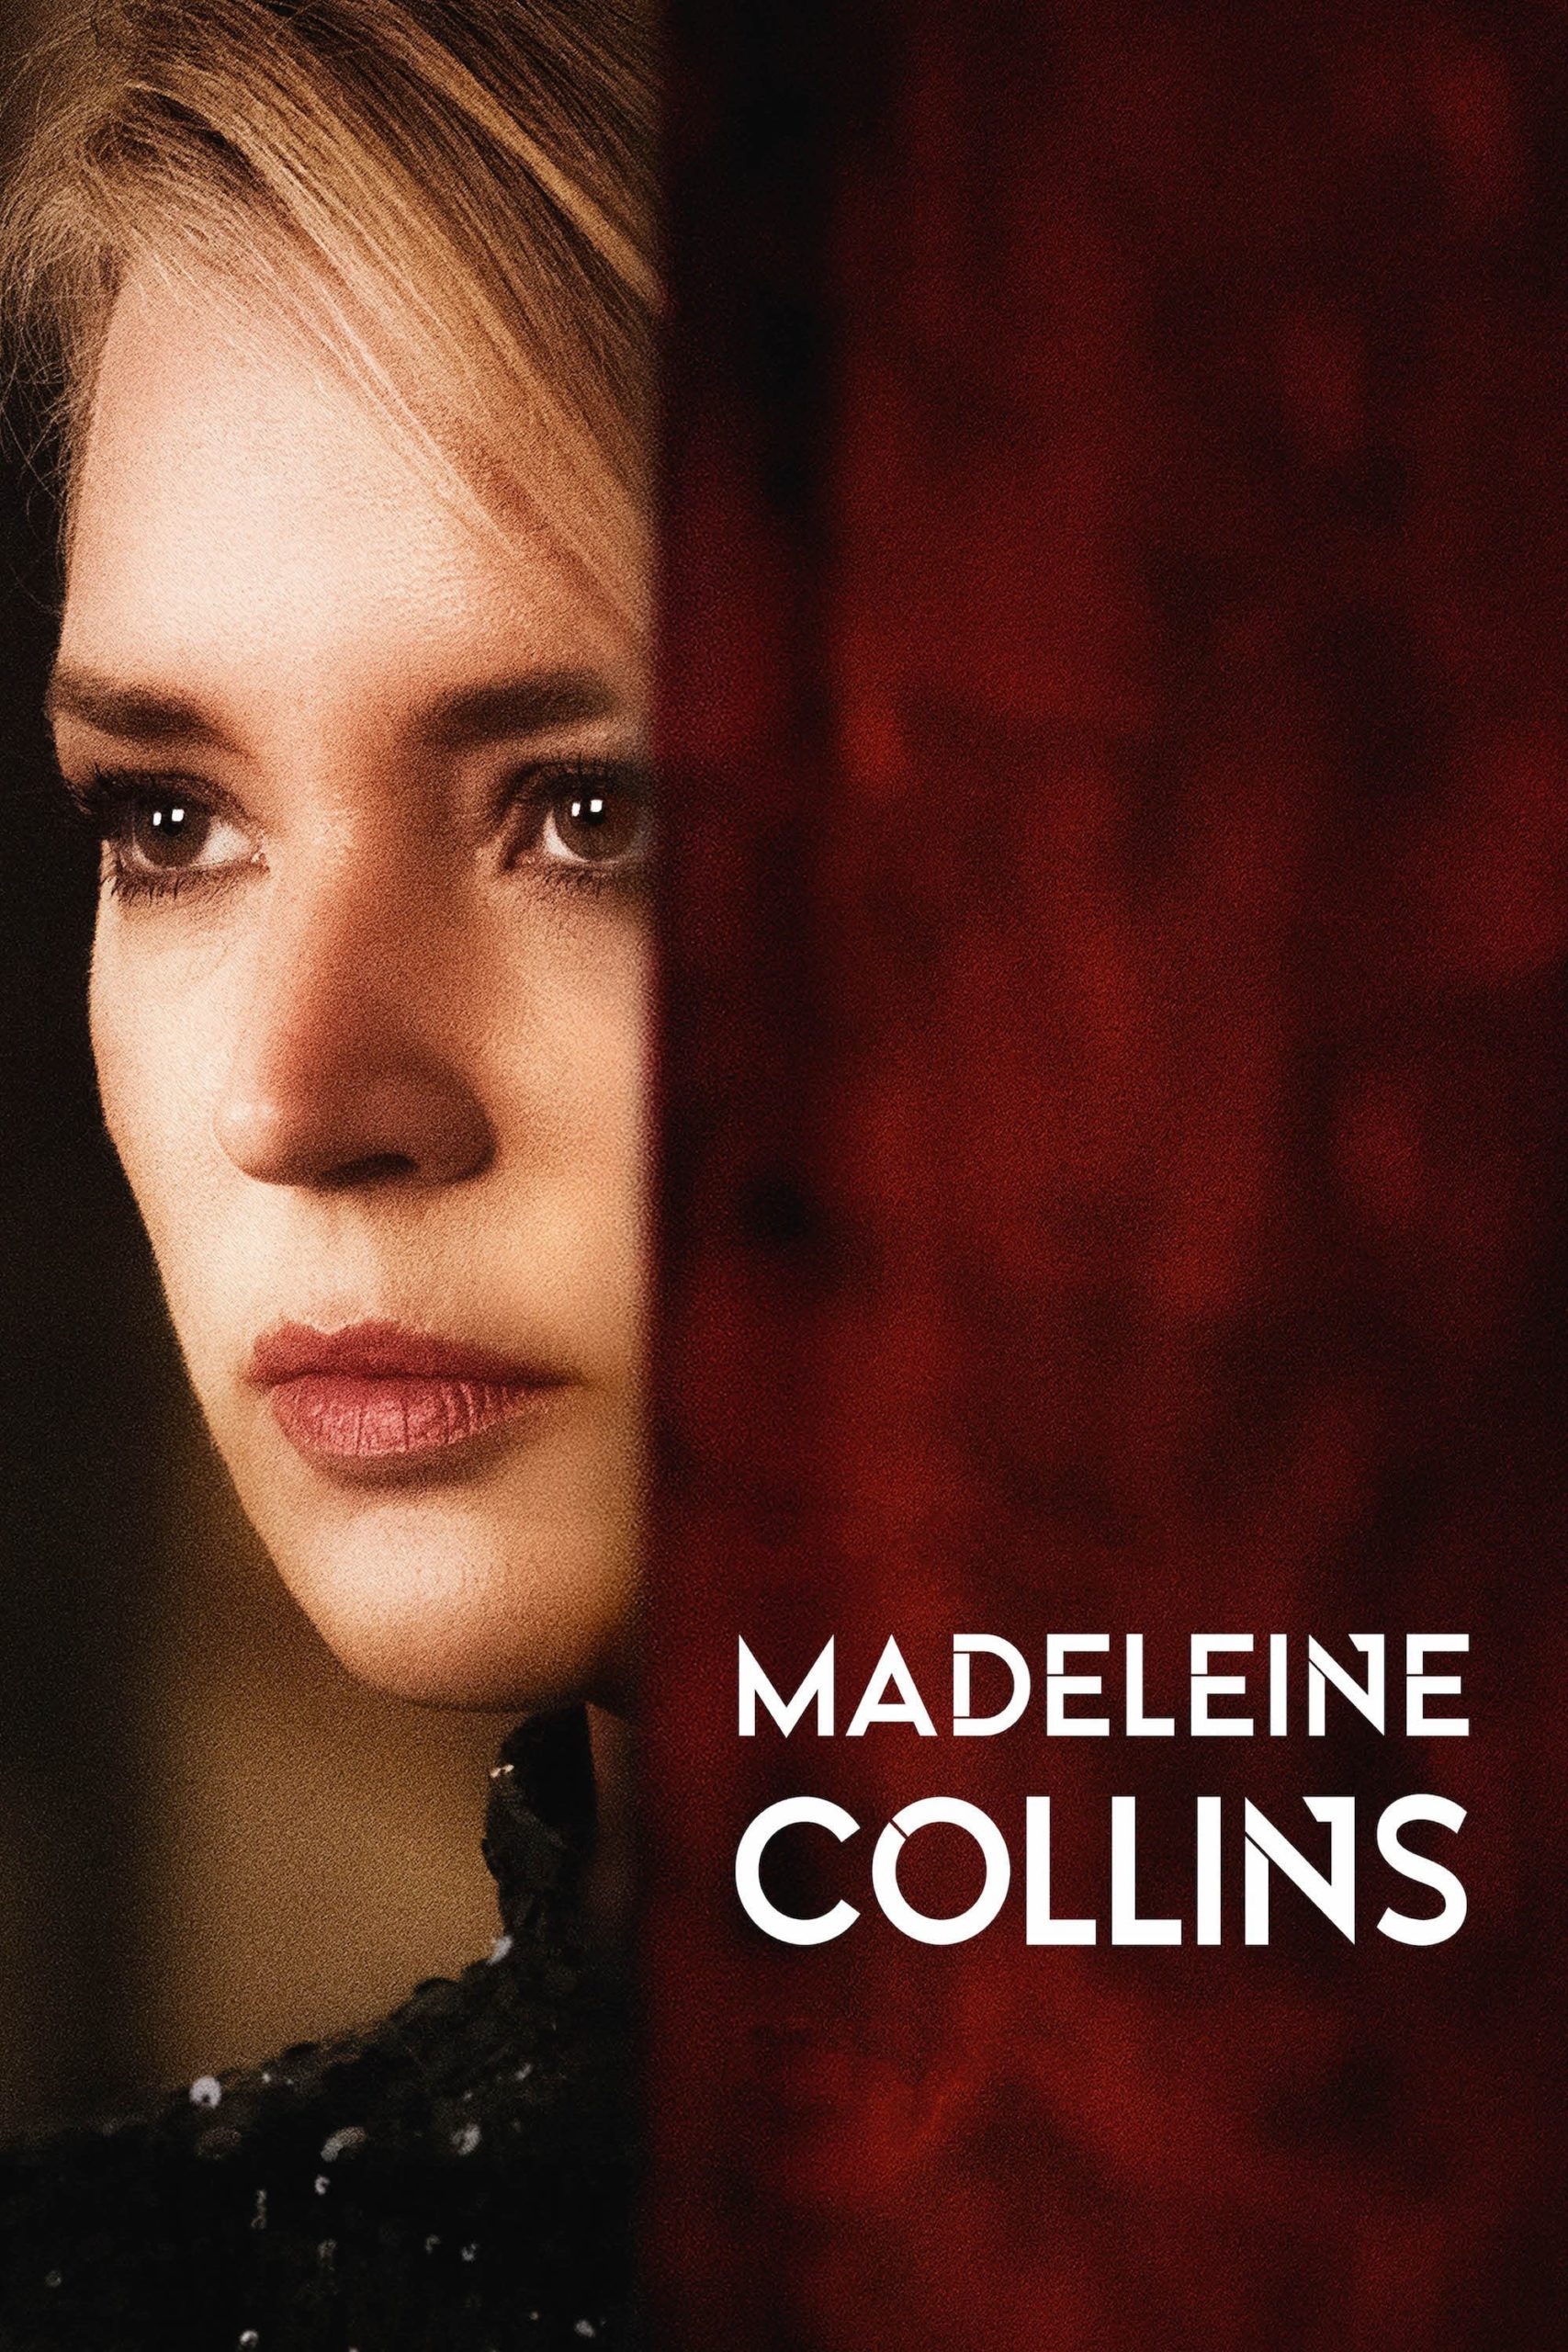 Poster for the movie "La doppia vita di Madeleine Collins"